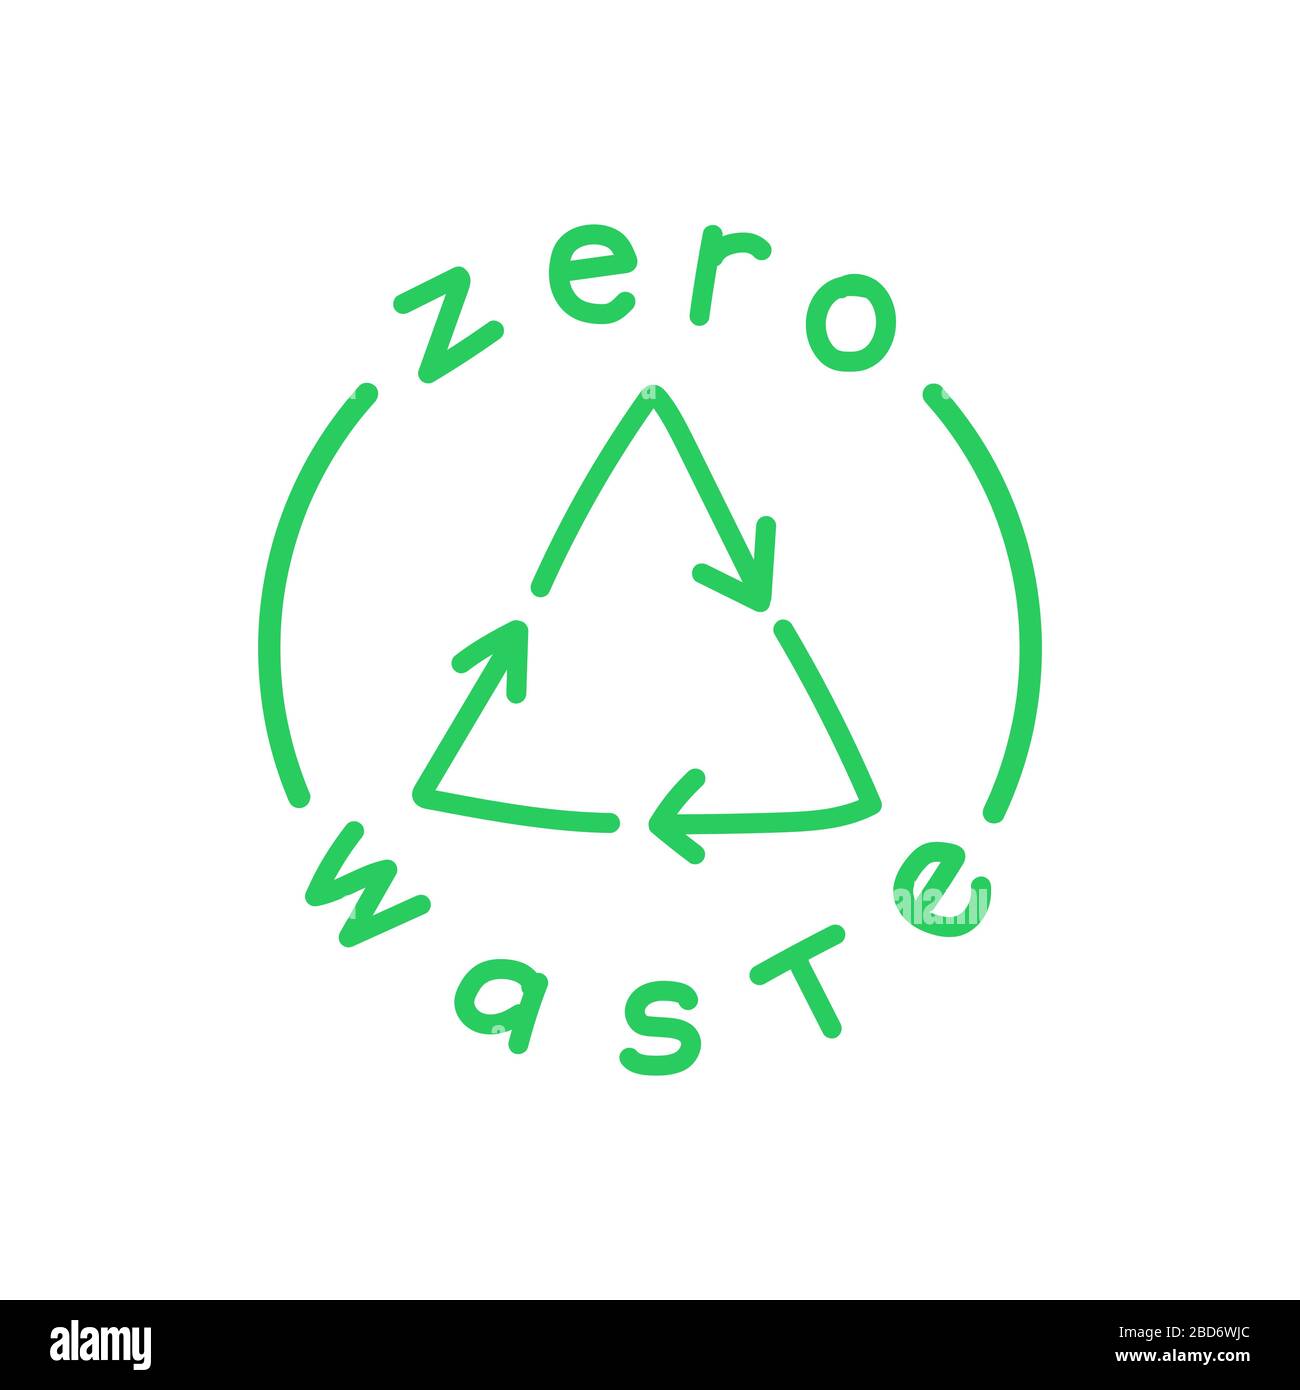 Kein Abfall handschriftlicher Text mit grünem Recycling-Zeichen auf weißem Hintergrund. Umweltzeichen, grünes Emblem. Vektorgrafiken. Stock Vektor